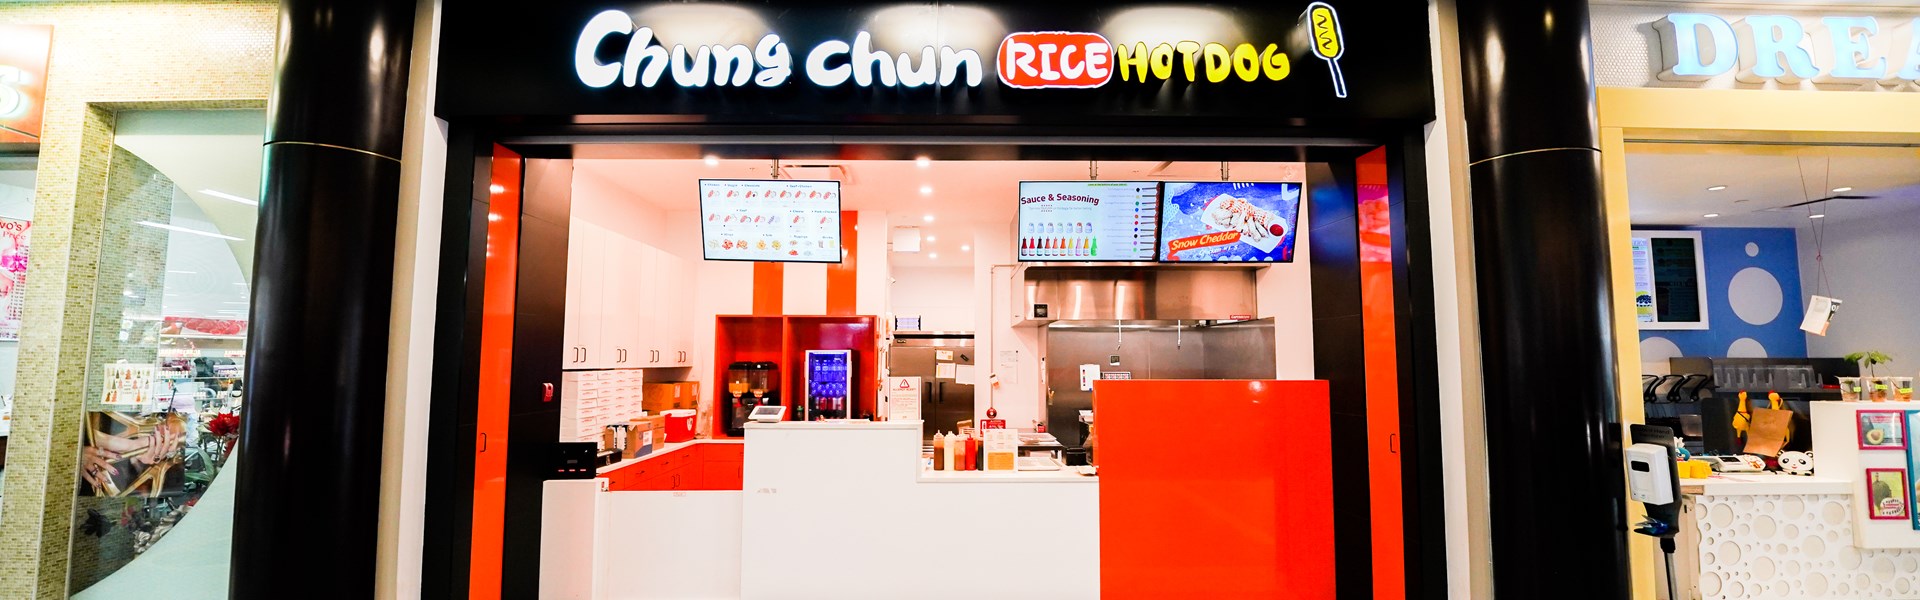 Chungchun Rice Hot Dog